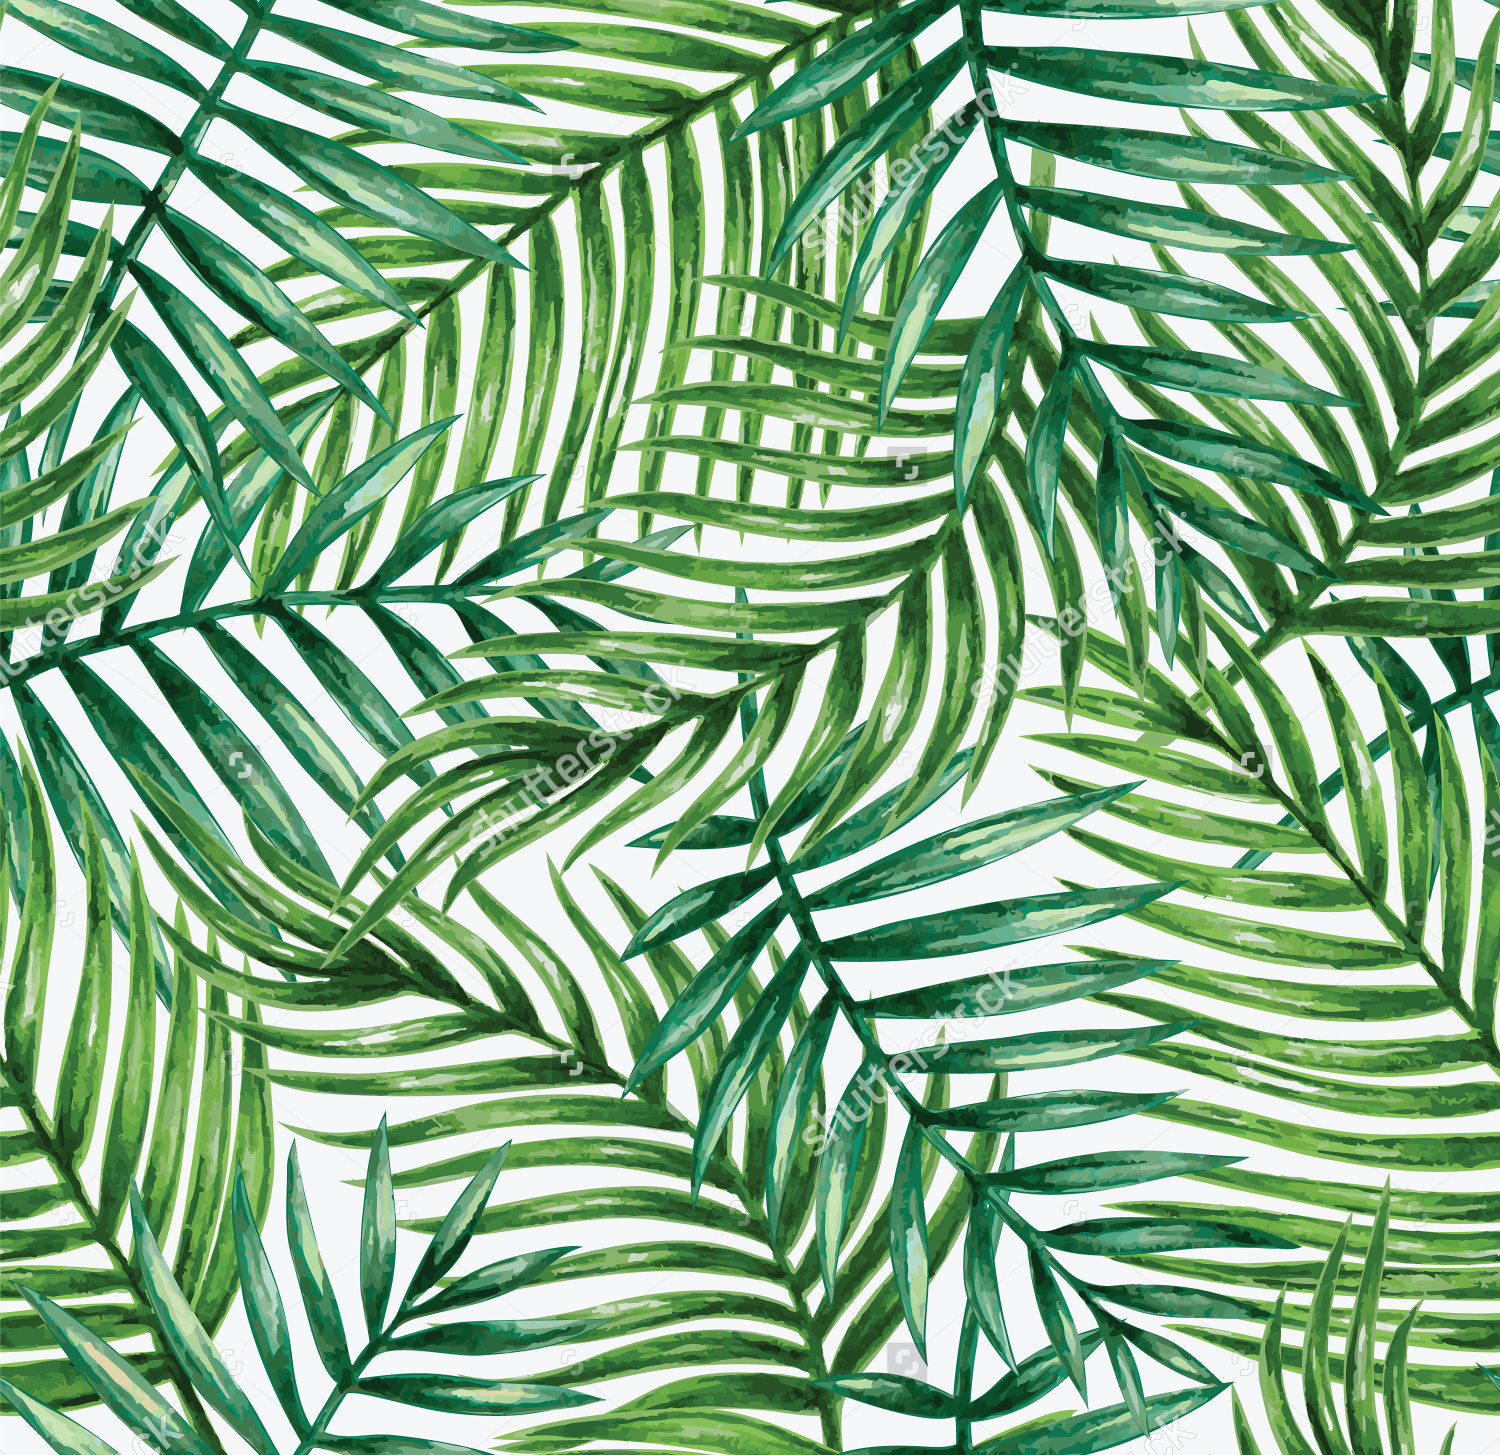 21+ Leaf Design Patterns, Textures, Backgrounds, Images | Design Trends